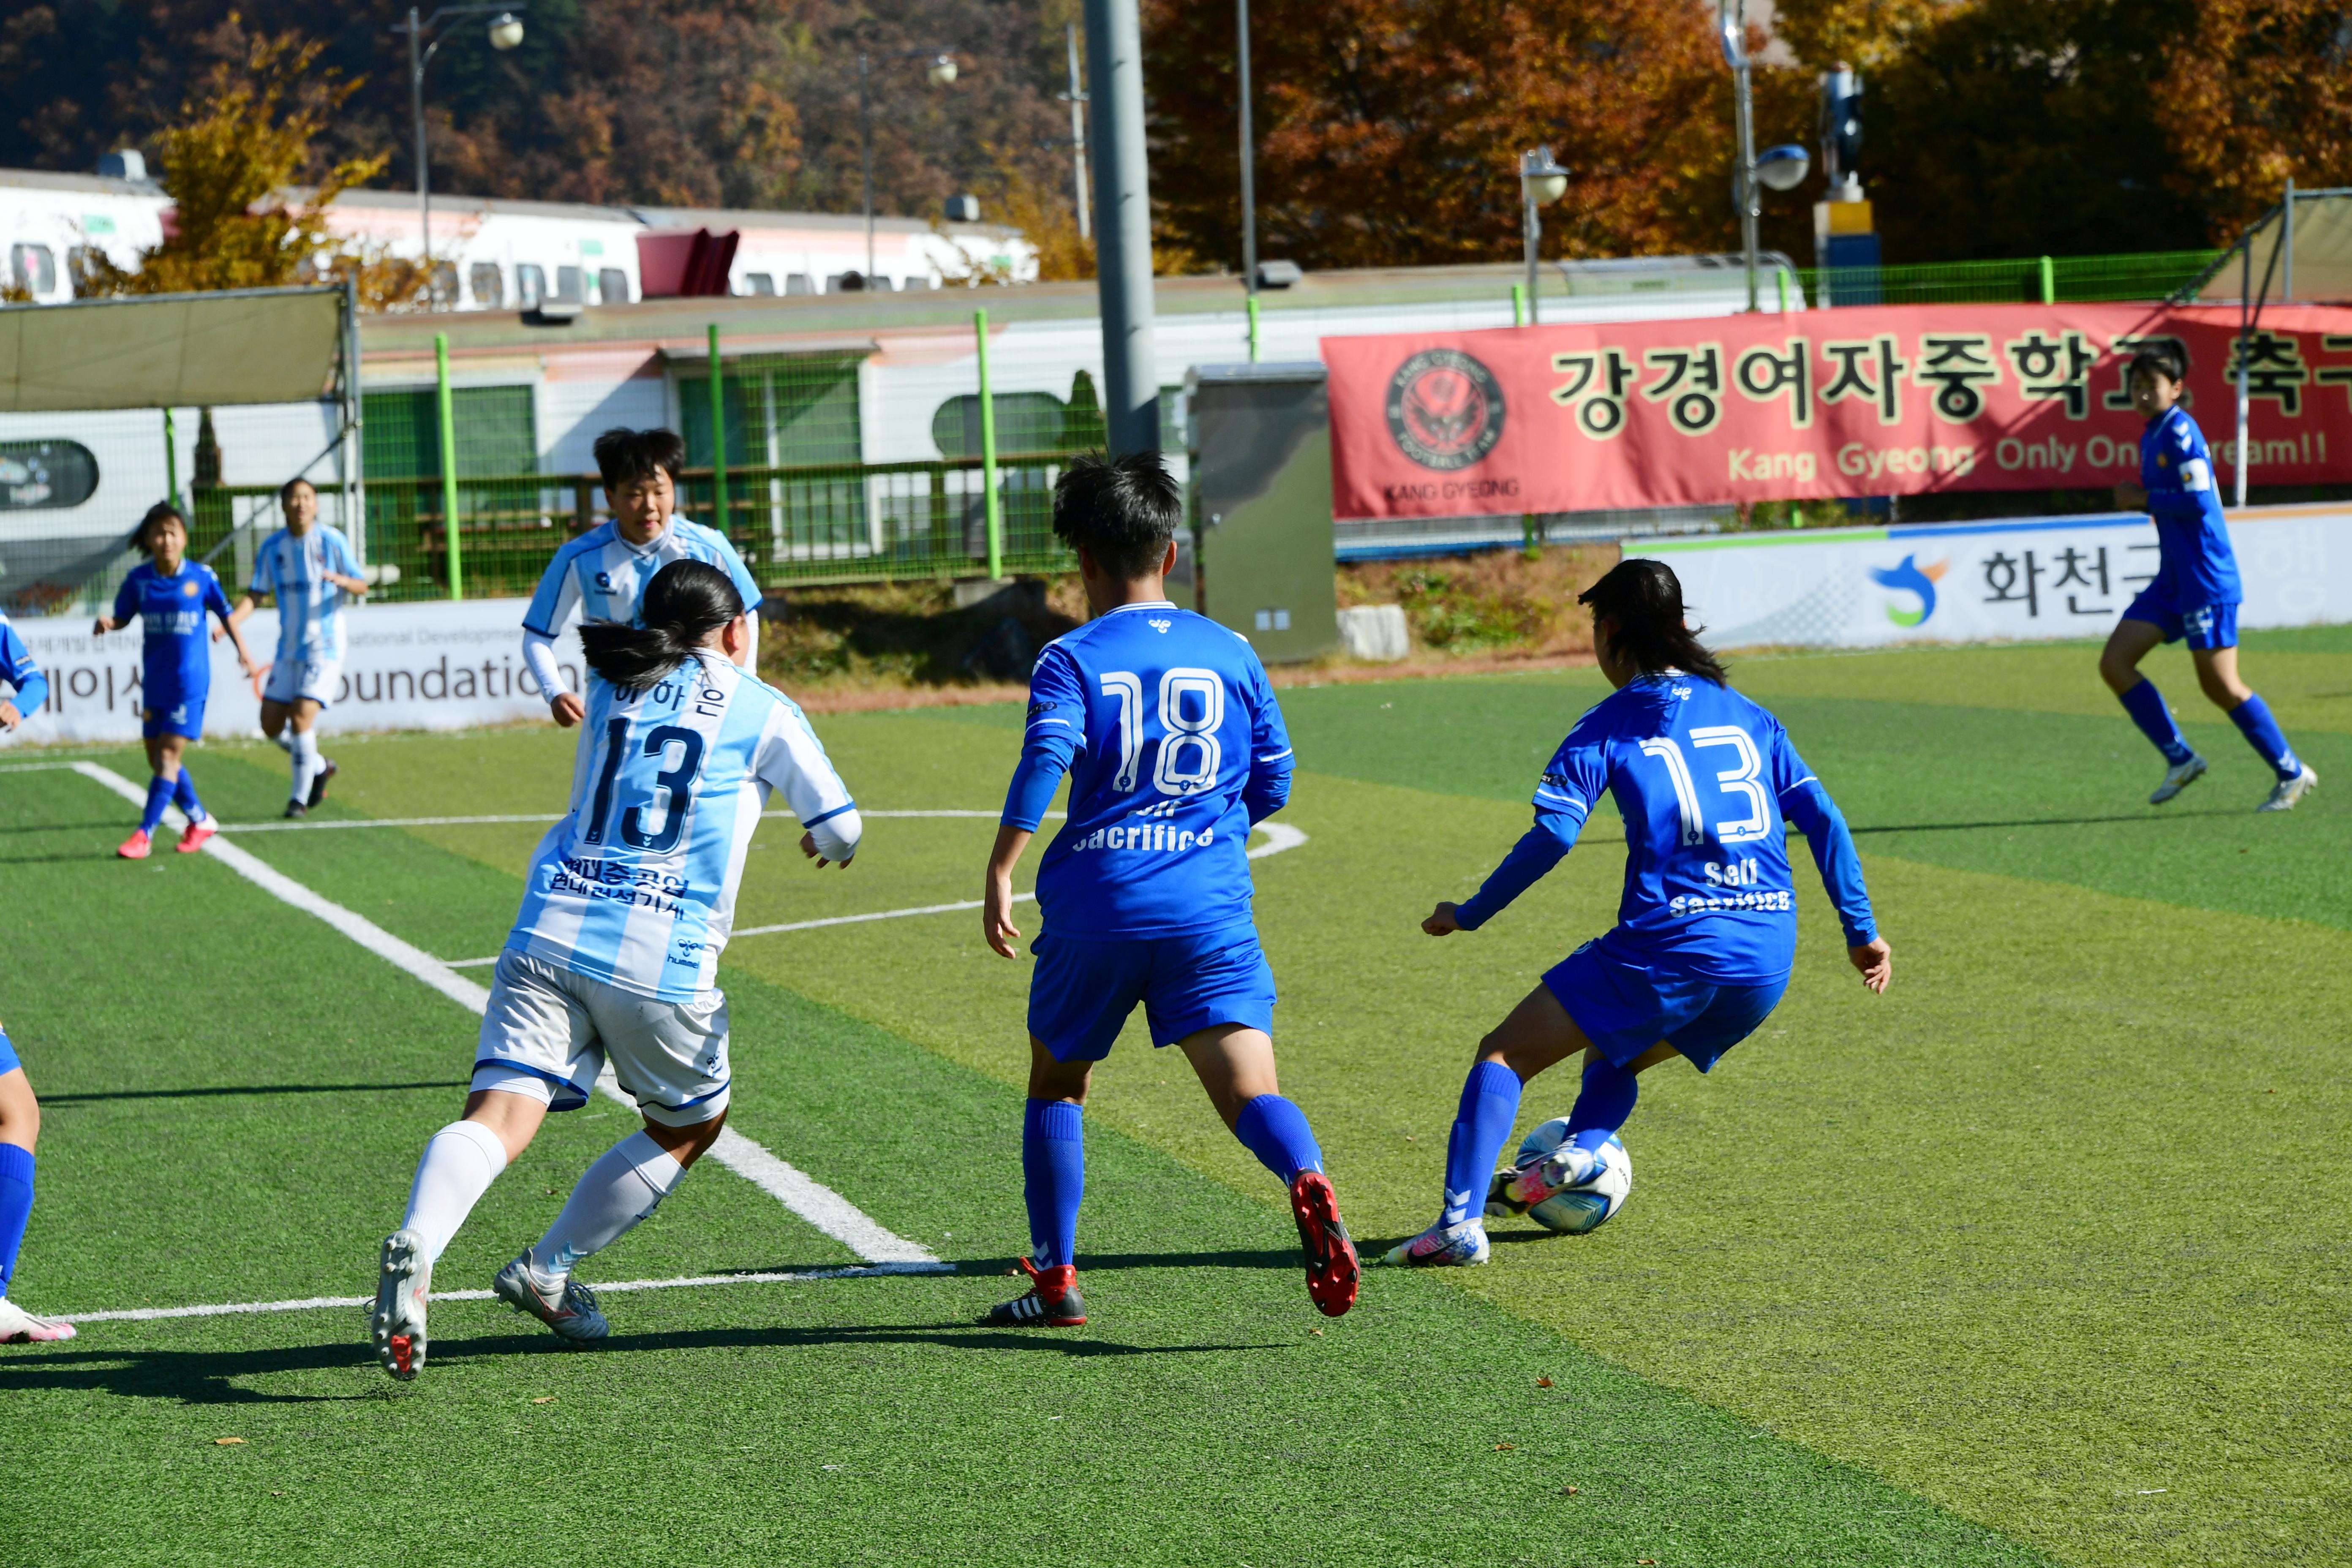 2020 춘계 한국여자축구 연맹전 의 사진